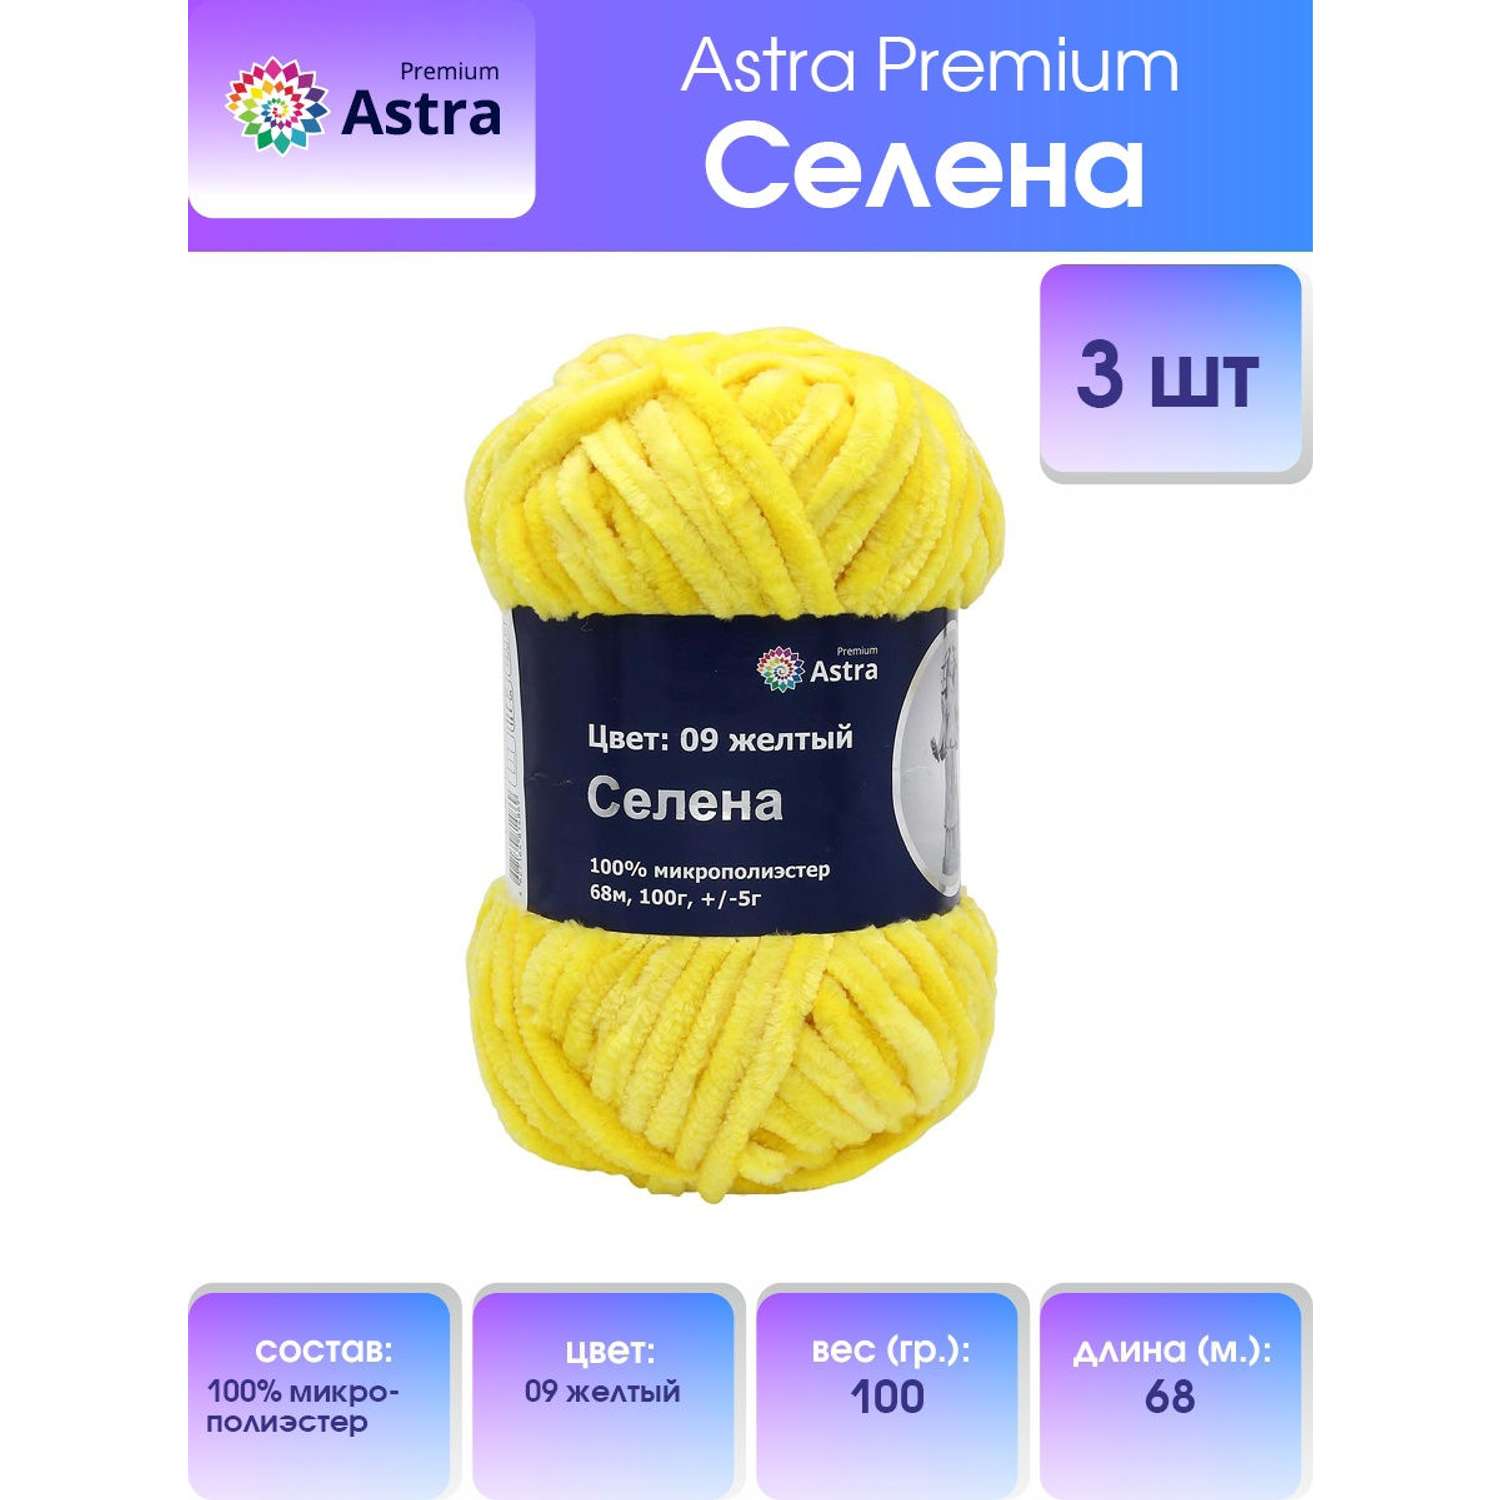 Пряжа для вязания Astra Premium селена мягкая микрополиэстер 100 гр 68 м 09 желтый 3 мотка - фото 1